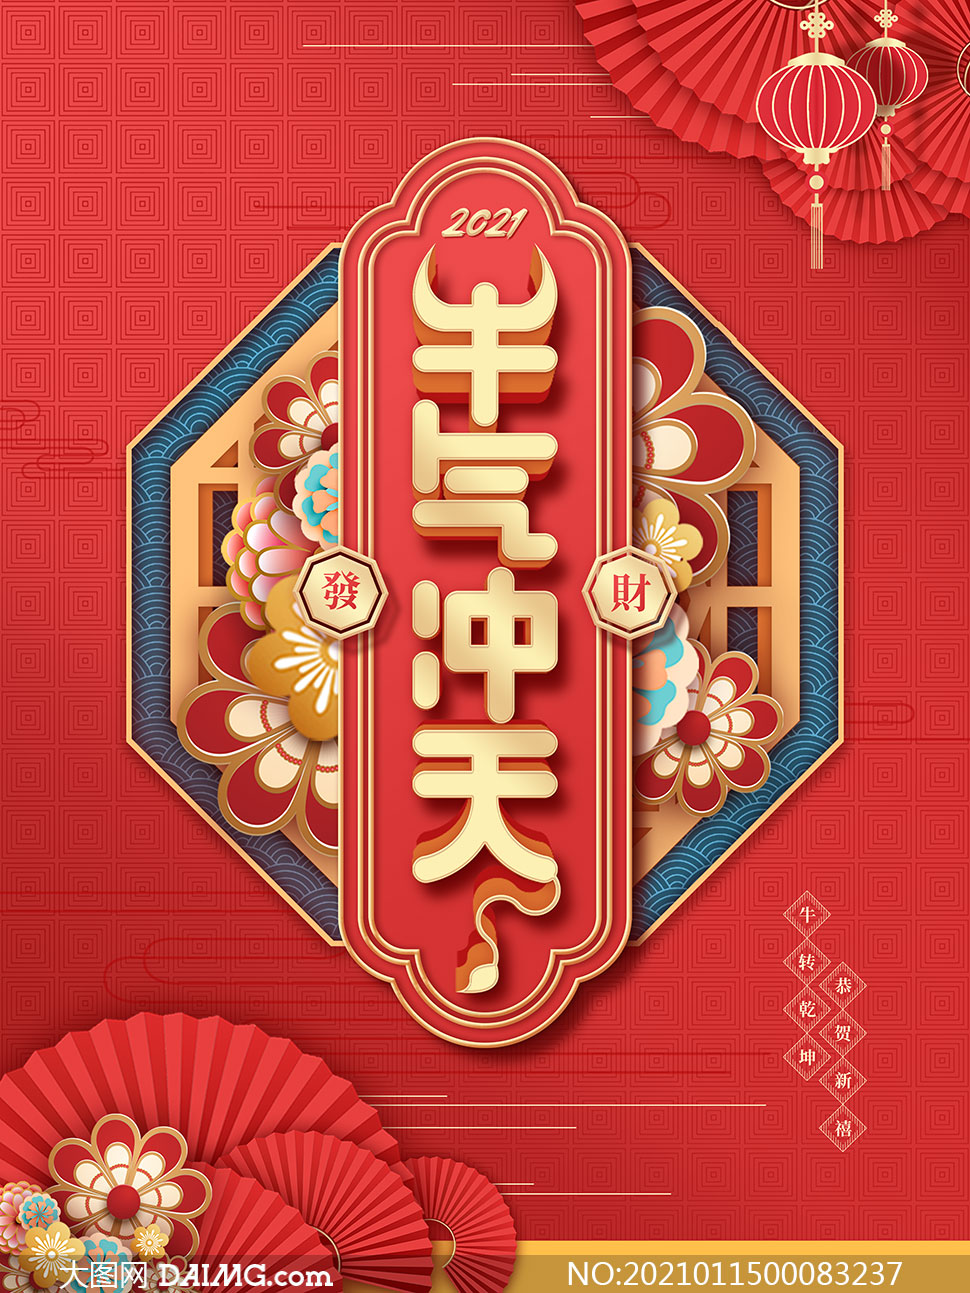 2021牛气冲天春节海报设计psd素材